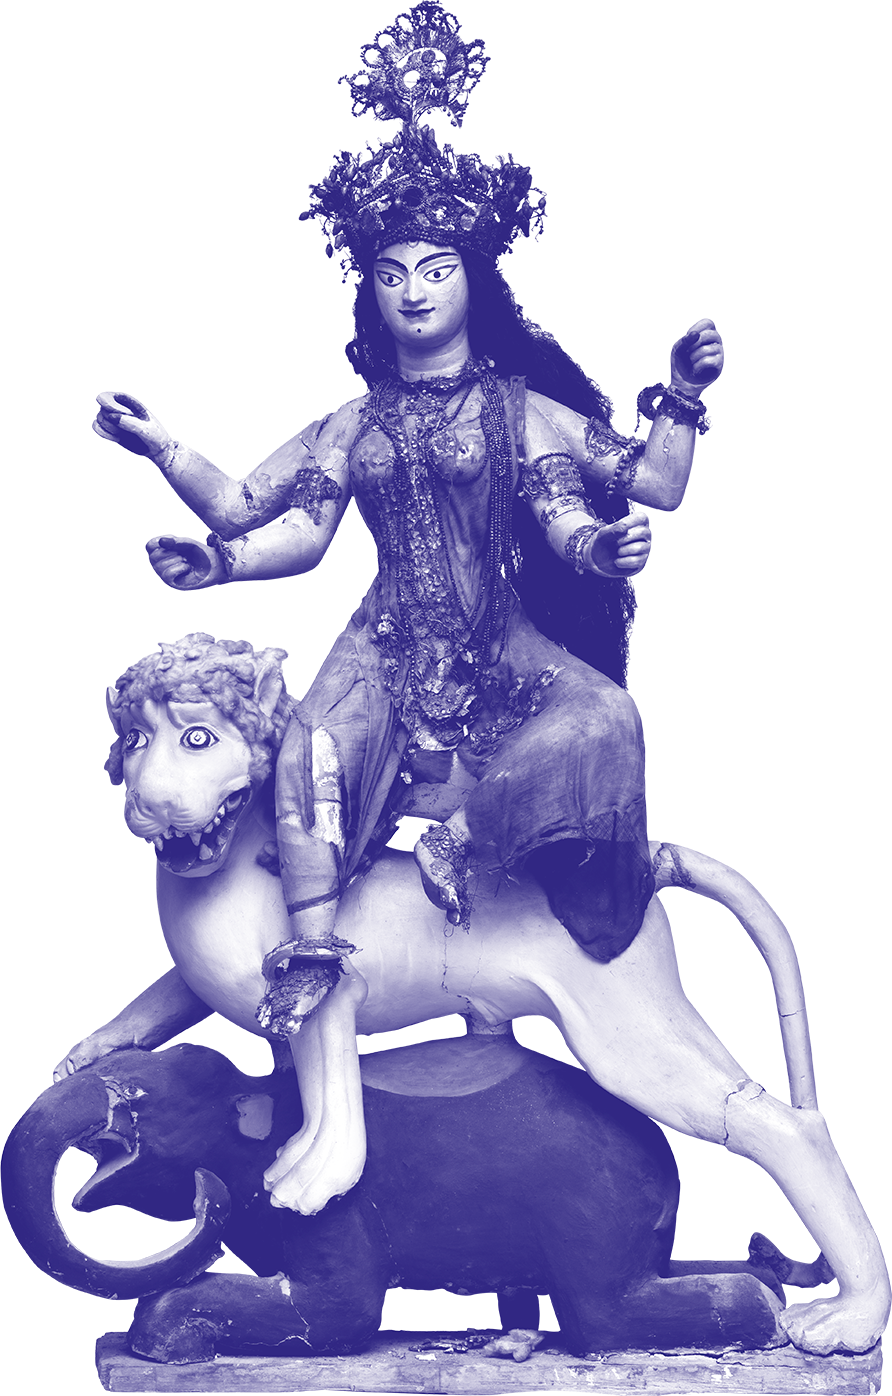 Die vierarmige Göttin Durga sitzend auf einem Löwen und Elefanten, Objektbild koloriert